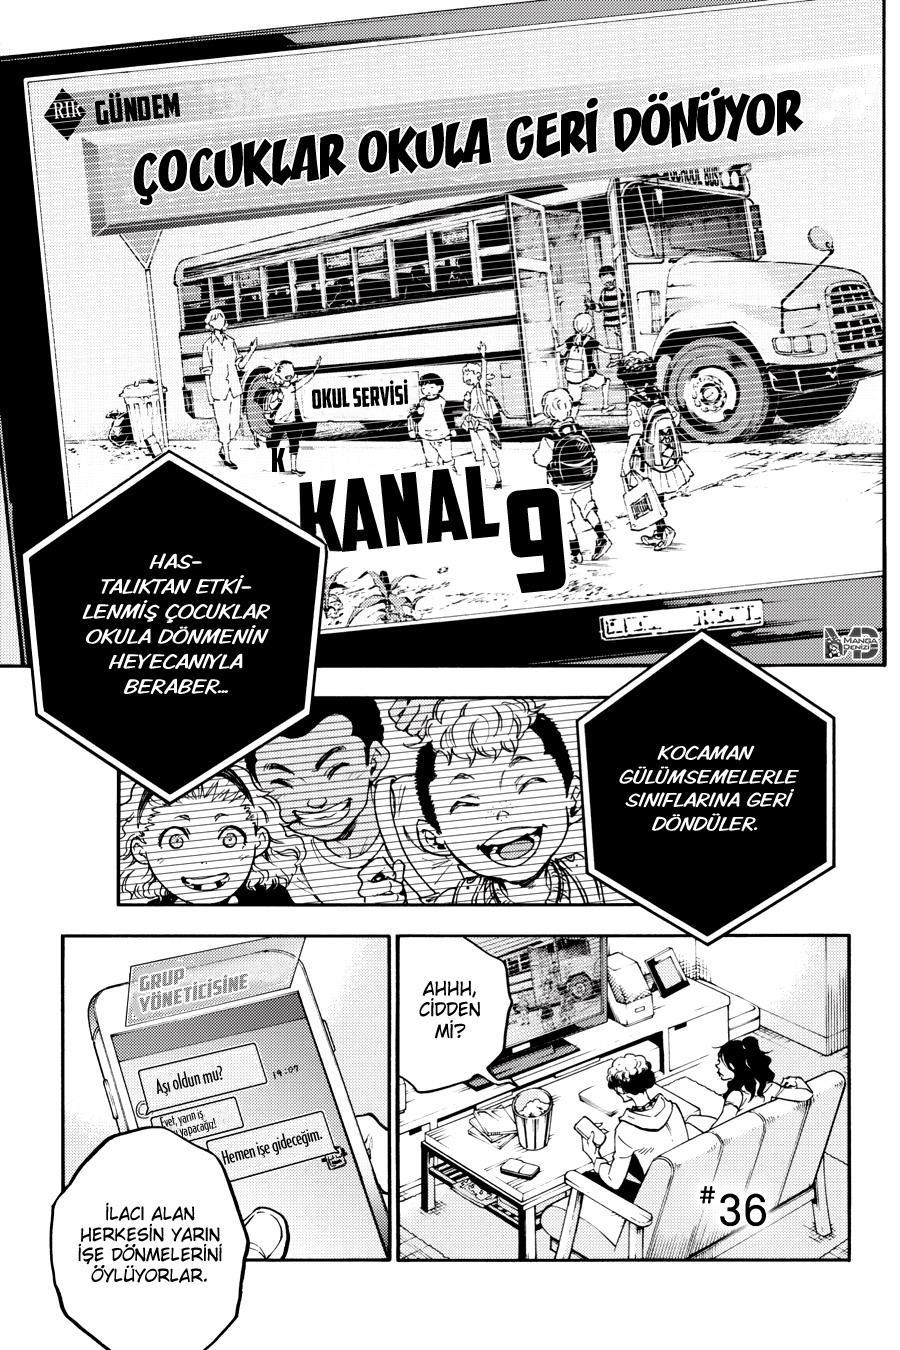 Smokin Parade mangasının 36 bölümünün 2. sayfasını okuyorsunuz.